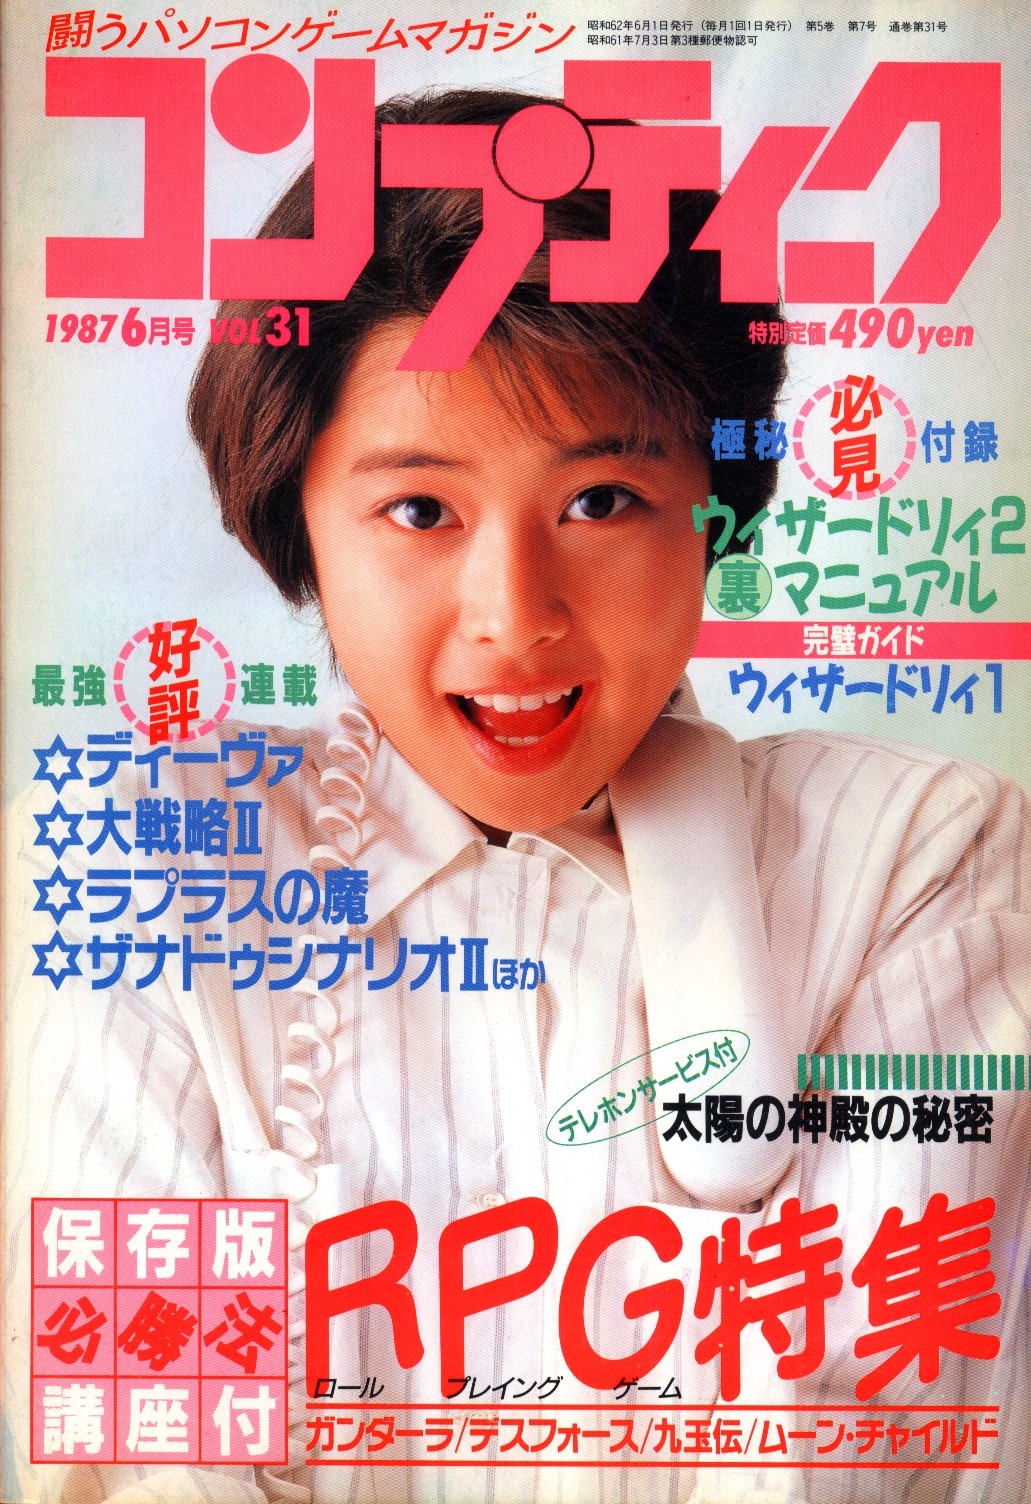 コンプティーク1987年6月号」角川書店-